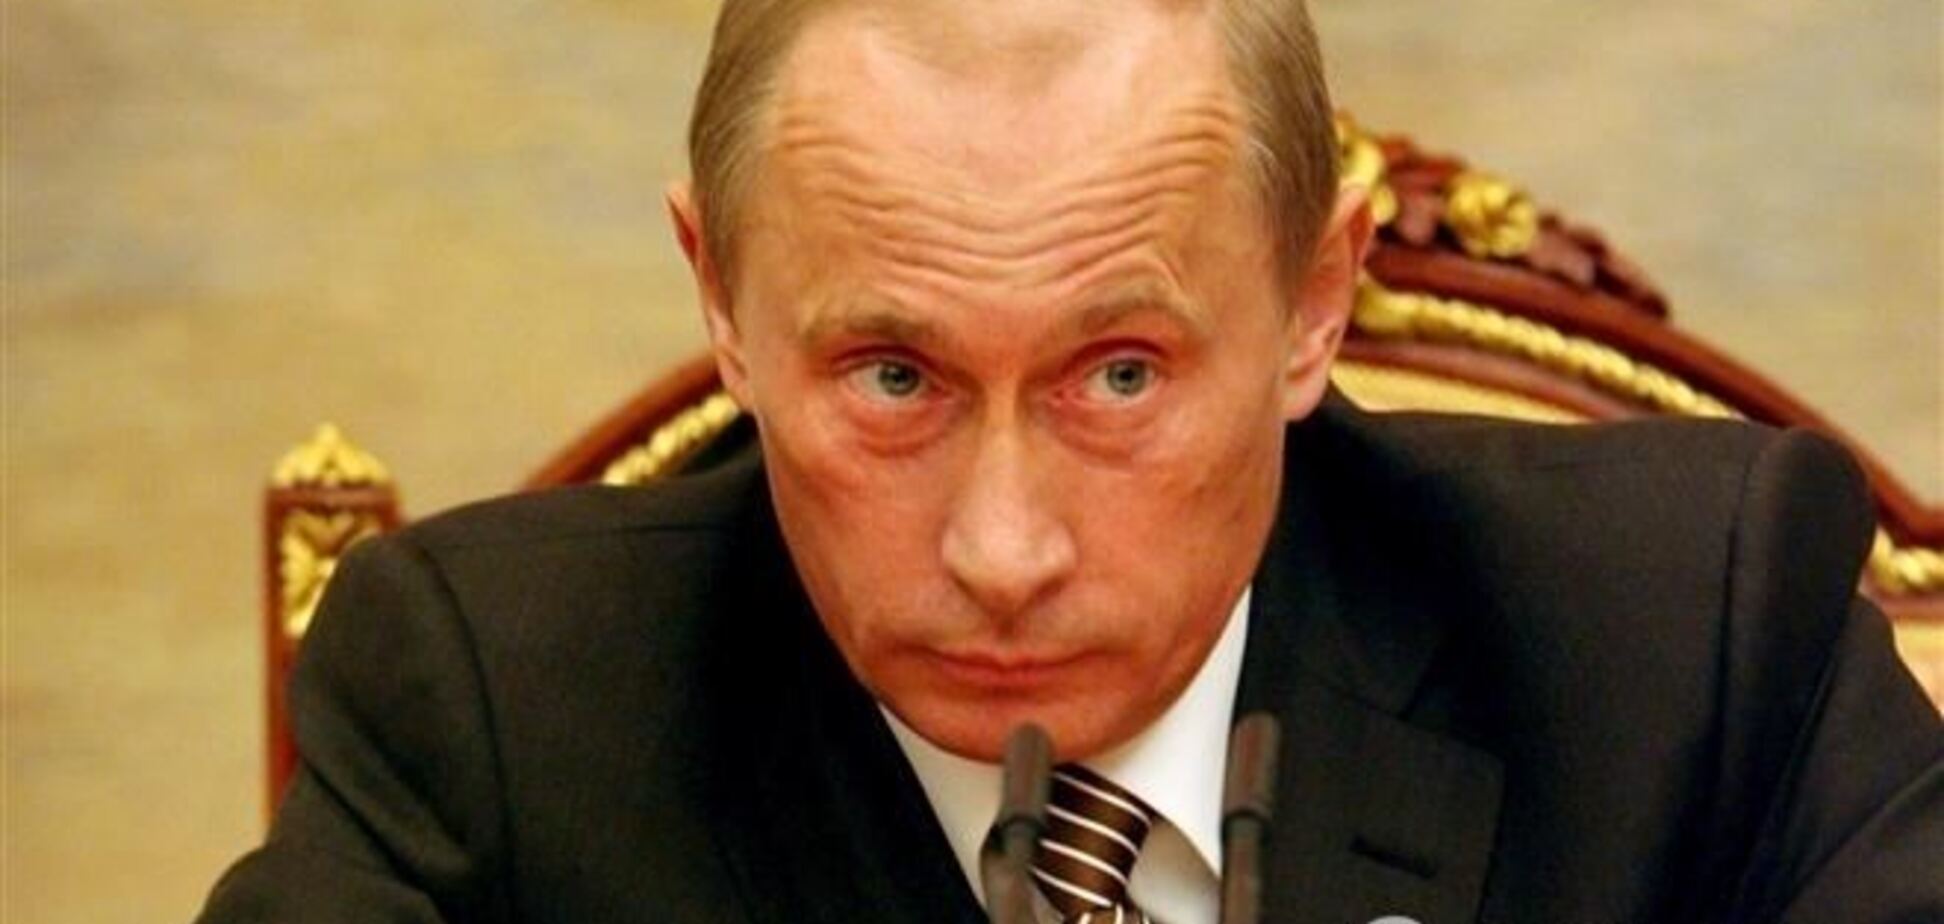  Путин сказал, что причиной стрельбы в школе стало плохое художественное воспитание